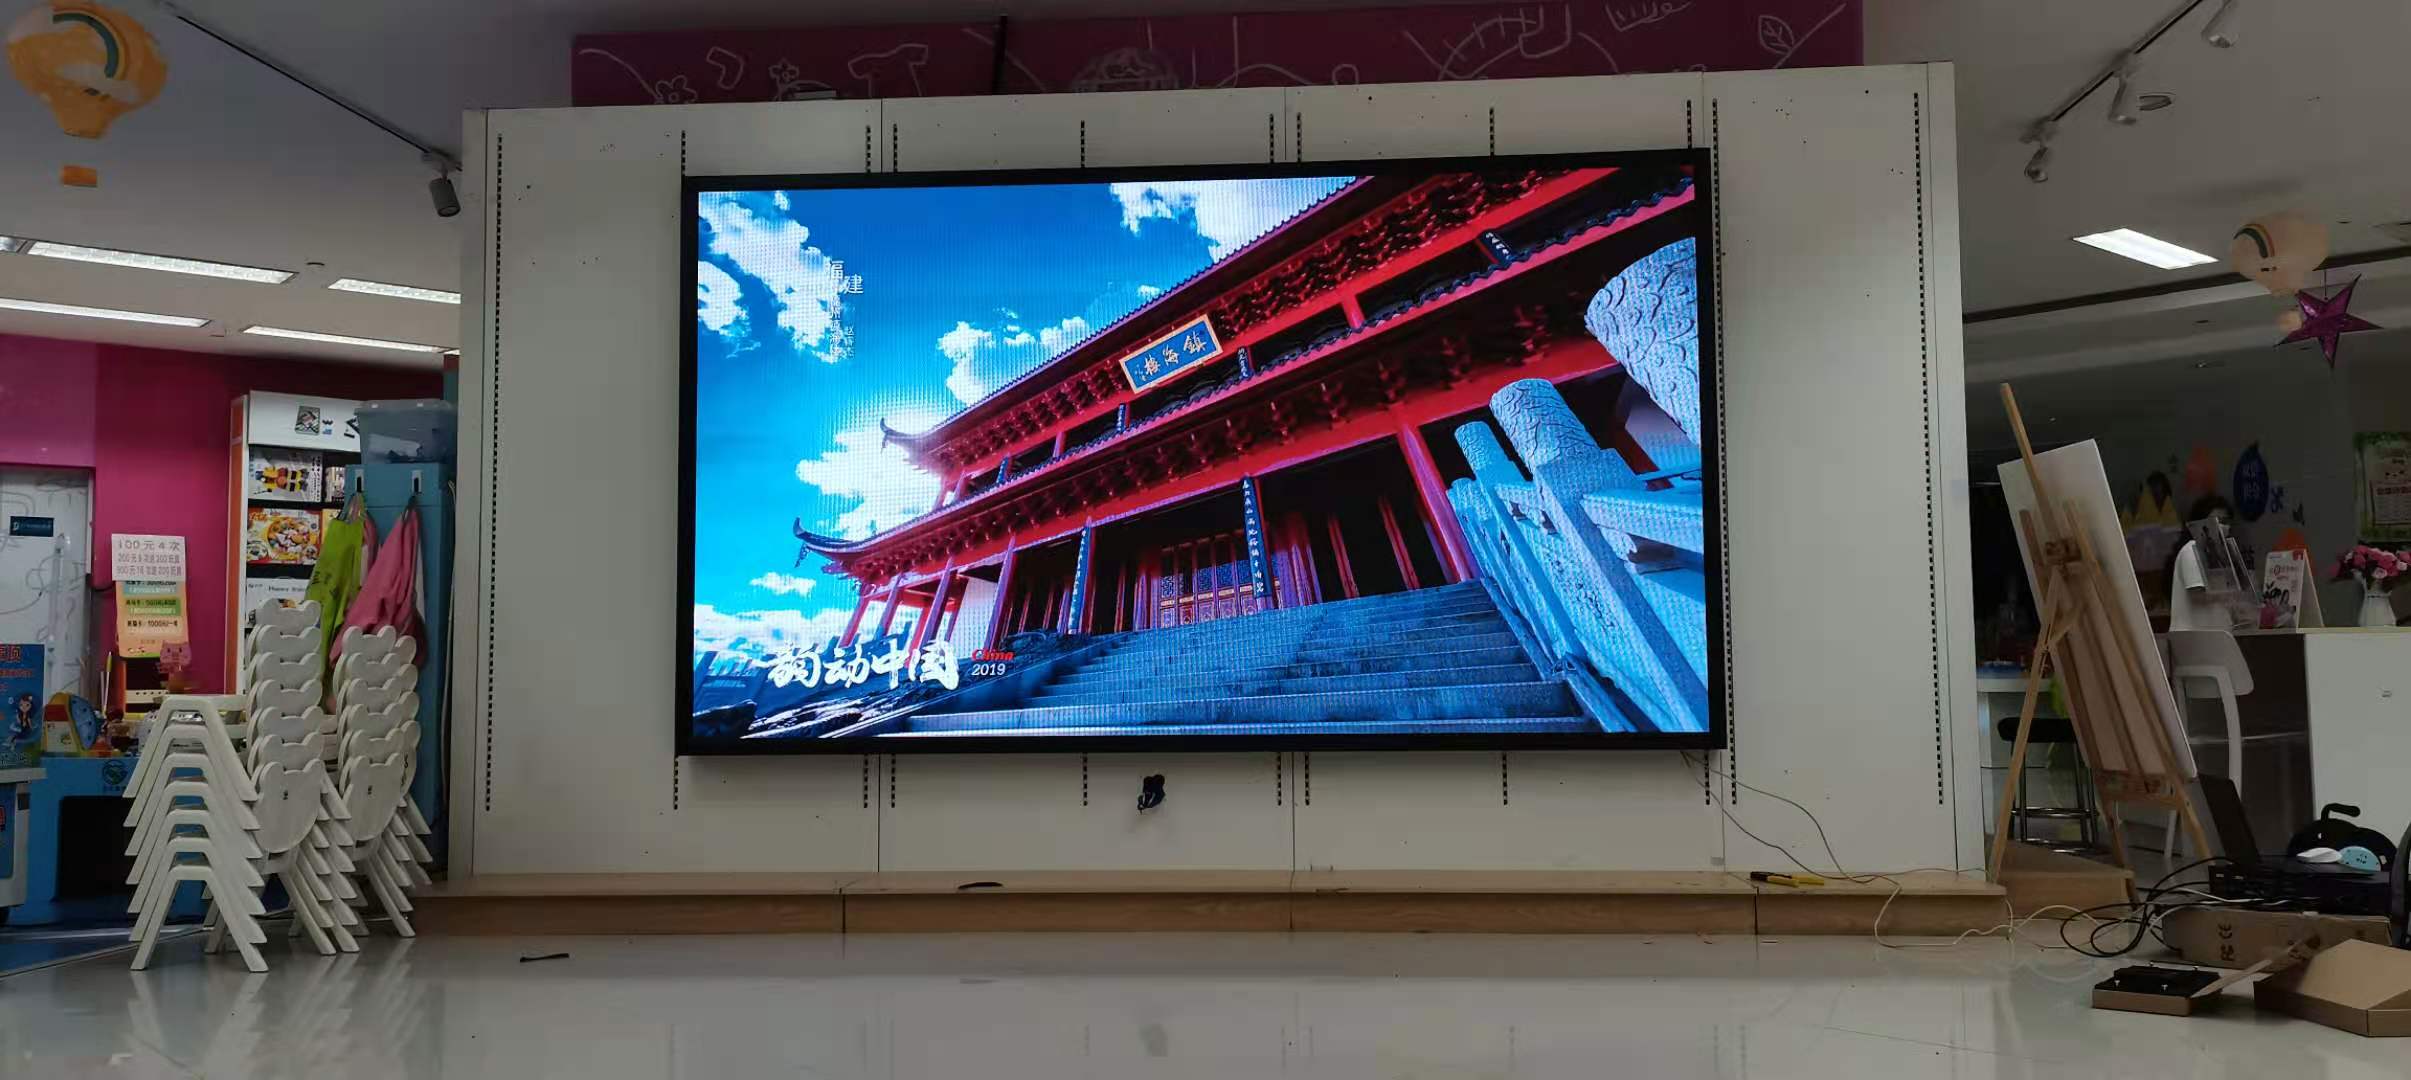 P2.5室內全彩LED顯示屏-2880*1600-廣州市荔灣區領展購物廣場